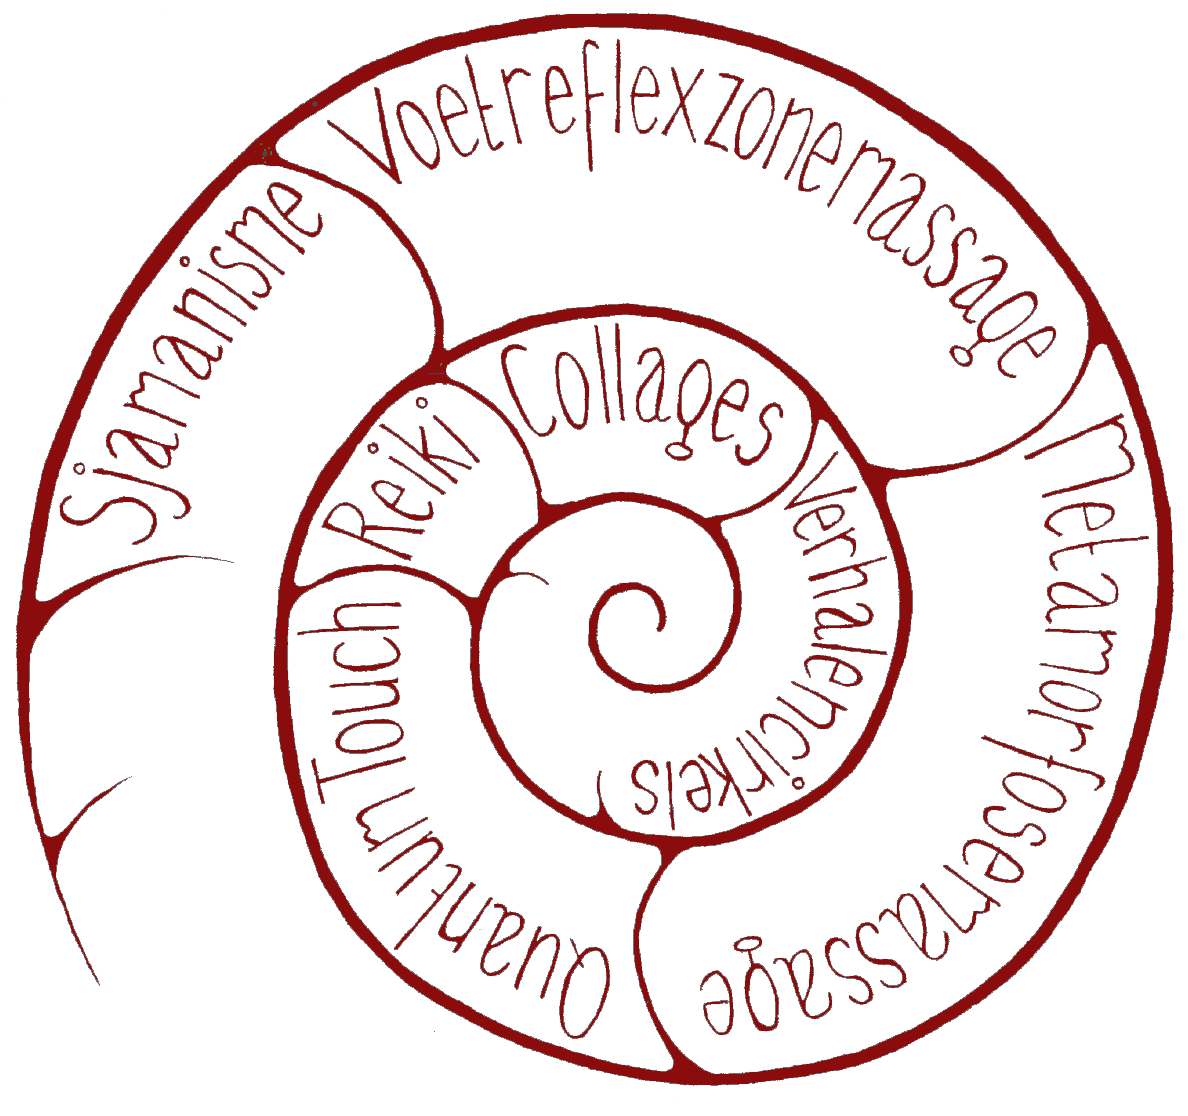 PraktijkEigenWijze in Ammoniet-logo